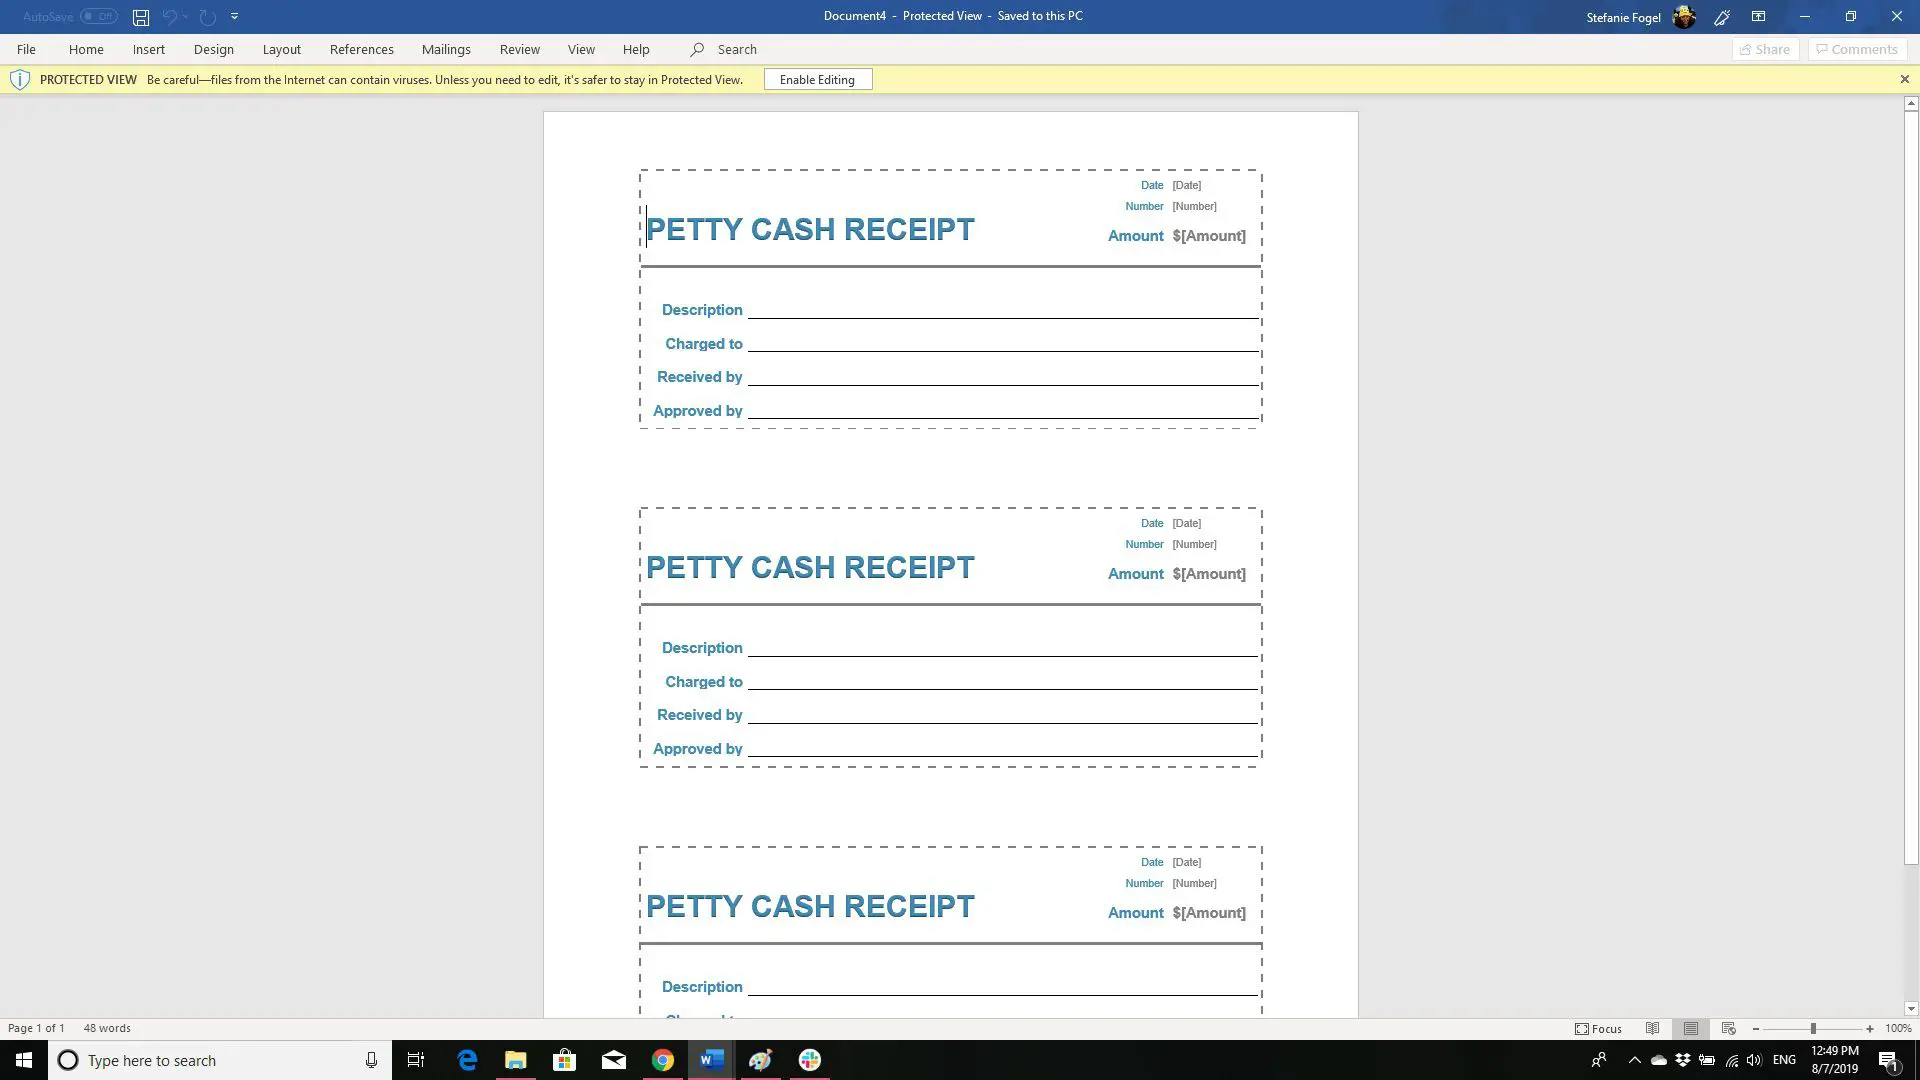 Captura de tela do modelo de recibo de caixa para pequenas despesas no Word